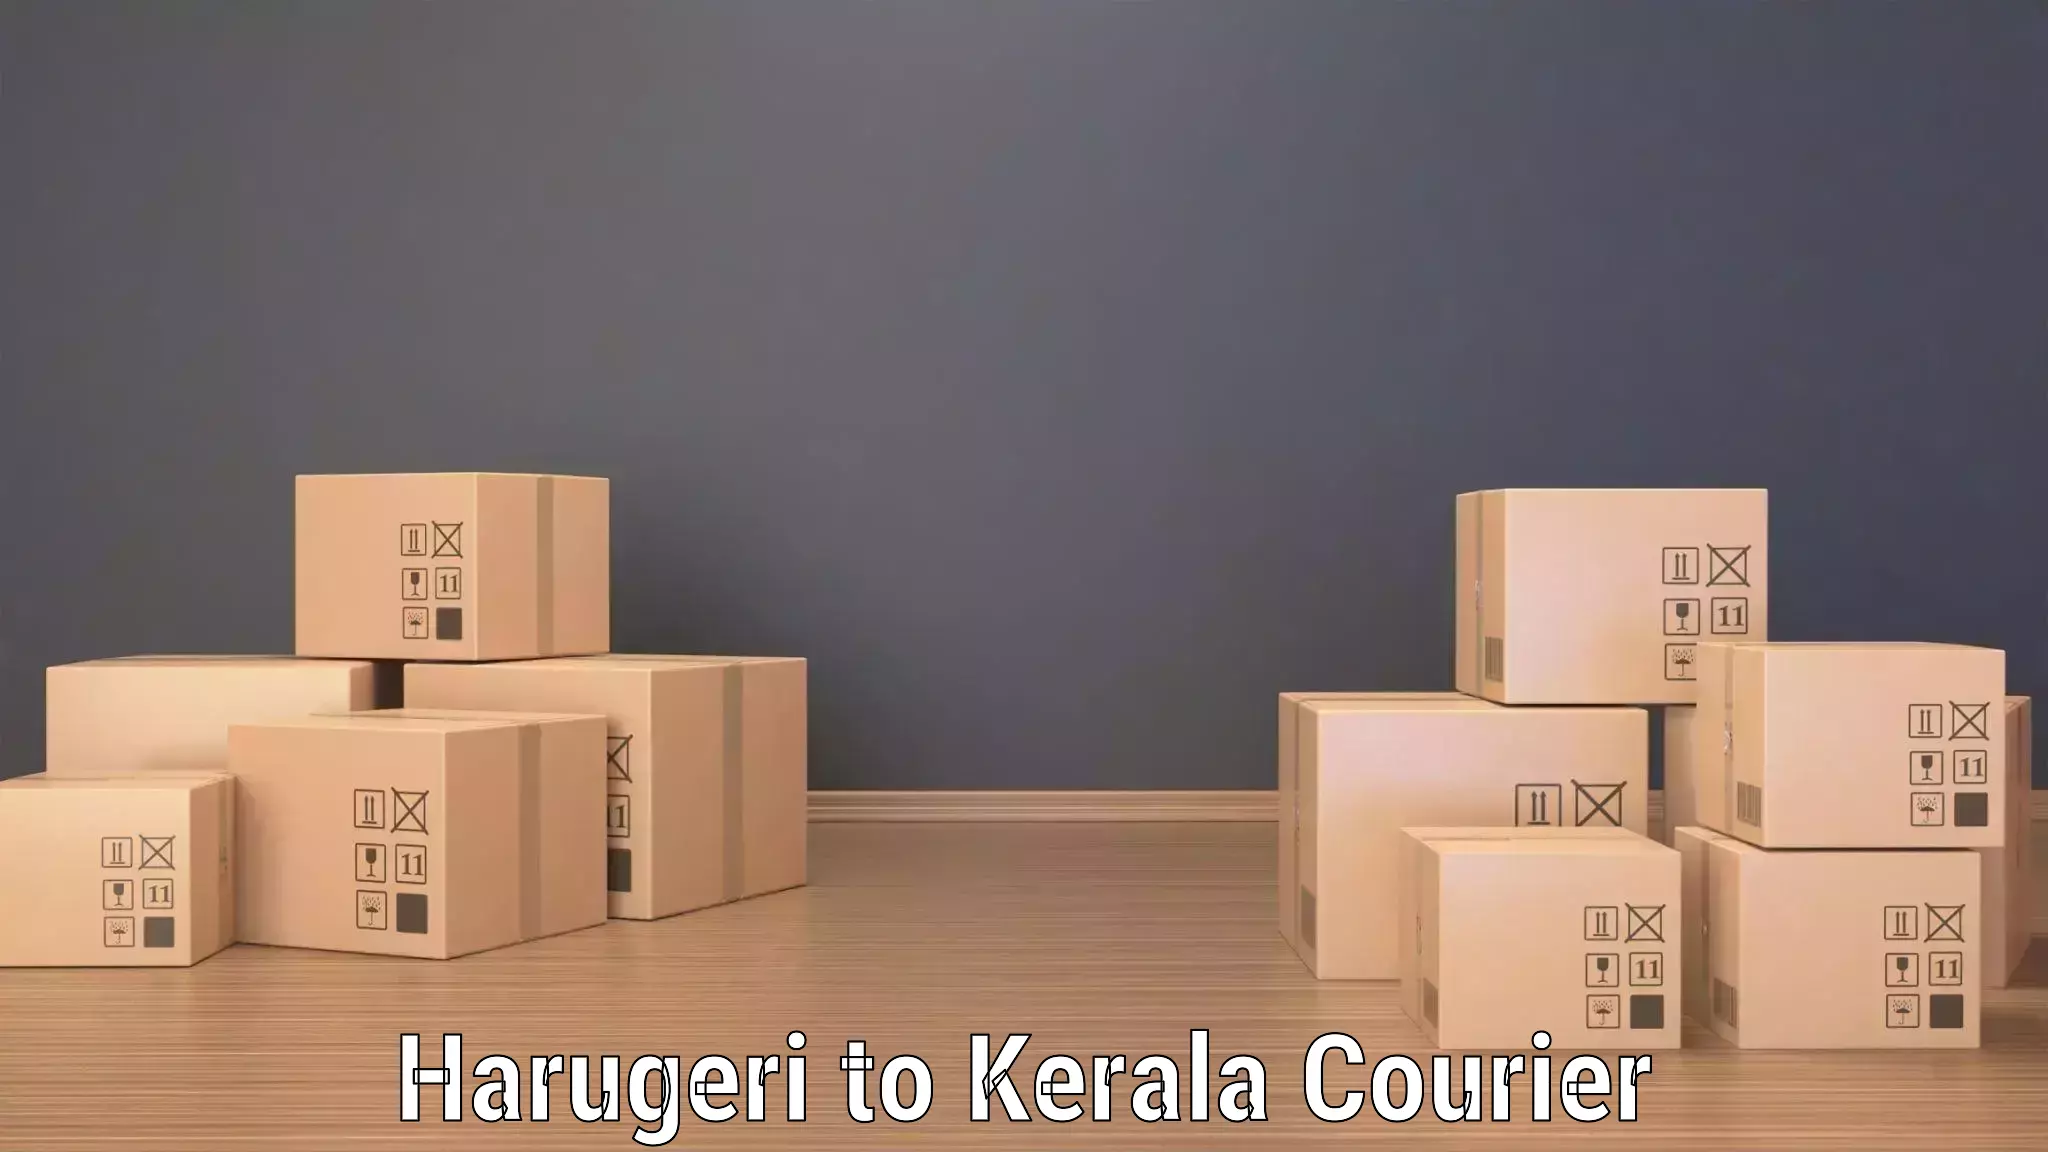 Courier app Harugeri to IIIT Kottayam